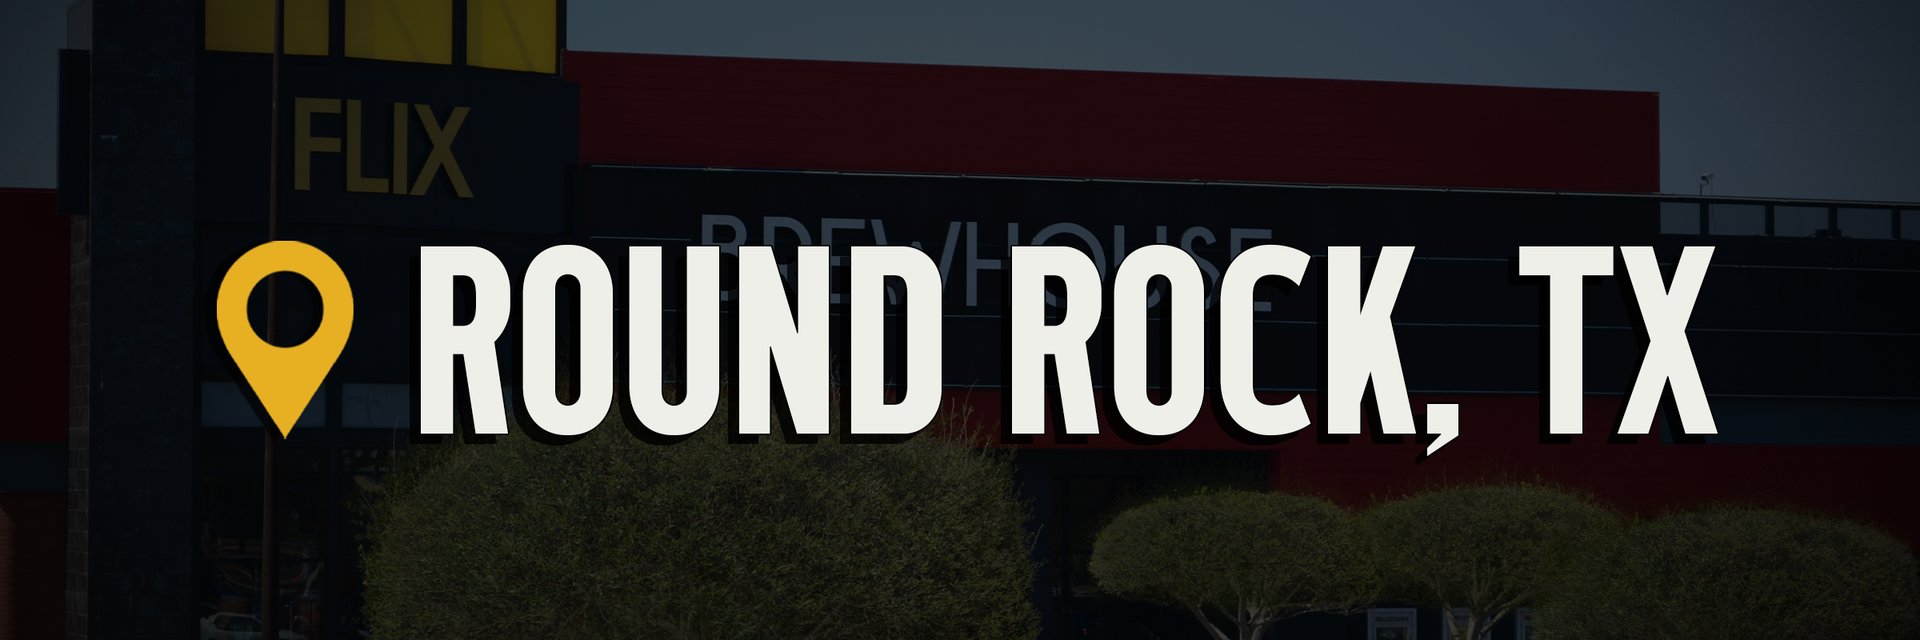 Round Rock